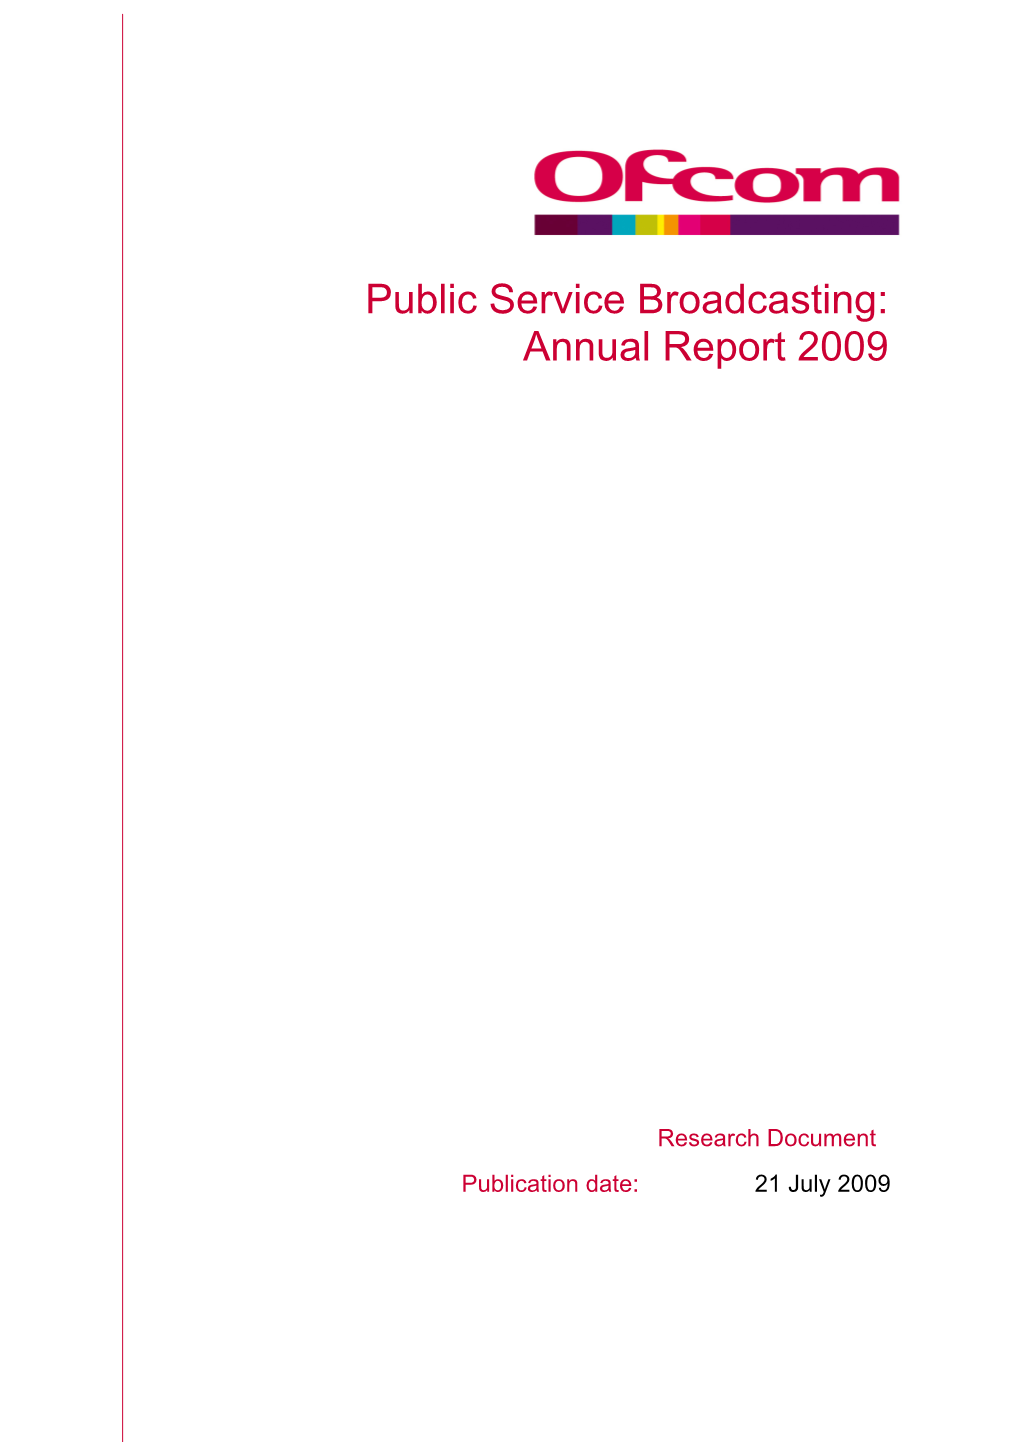 2009 Public Service Broadcasting Annual Report (PDF, 2.6